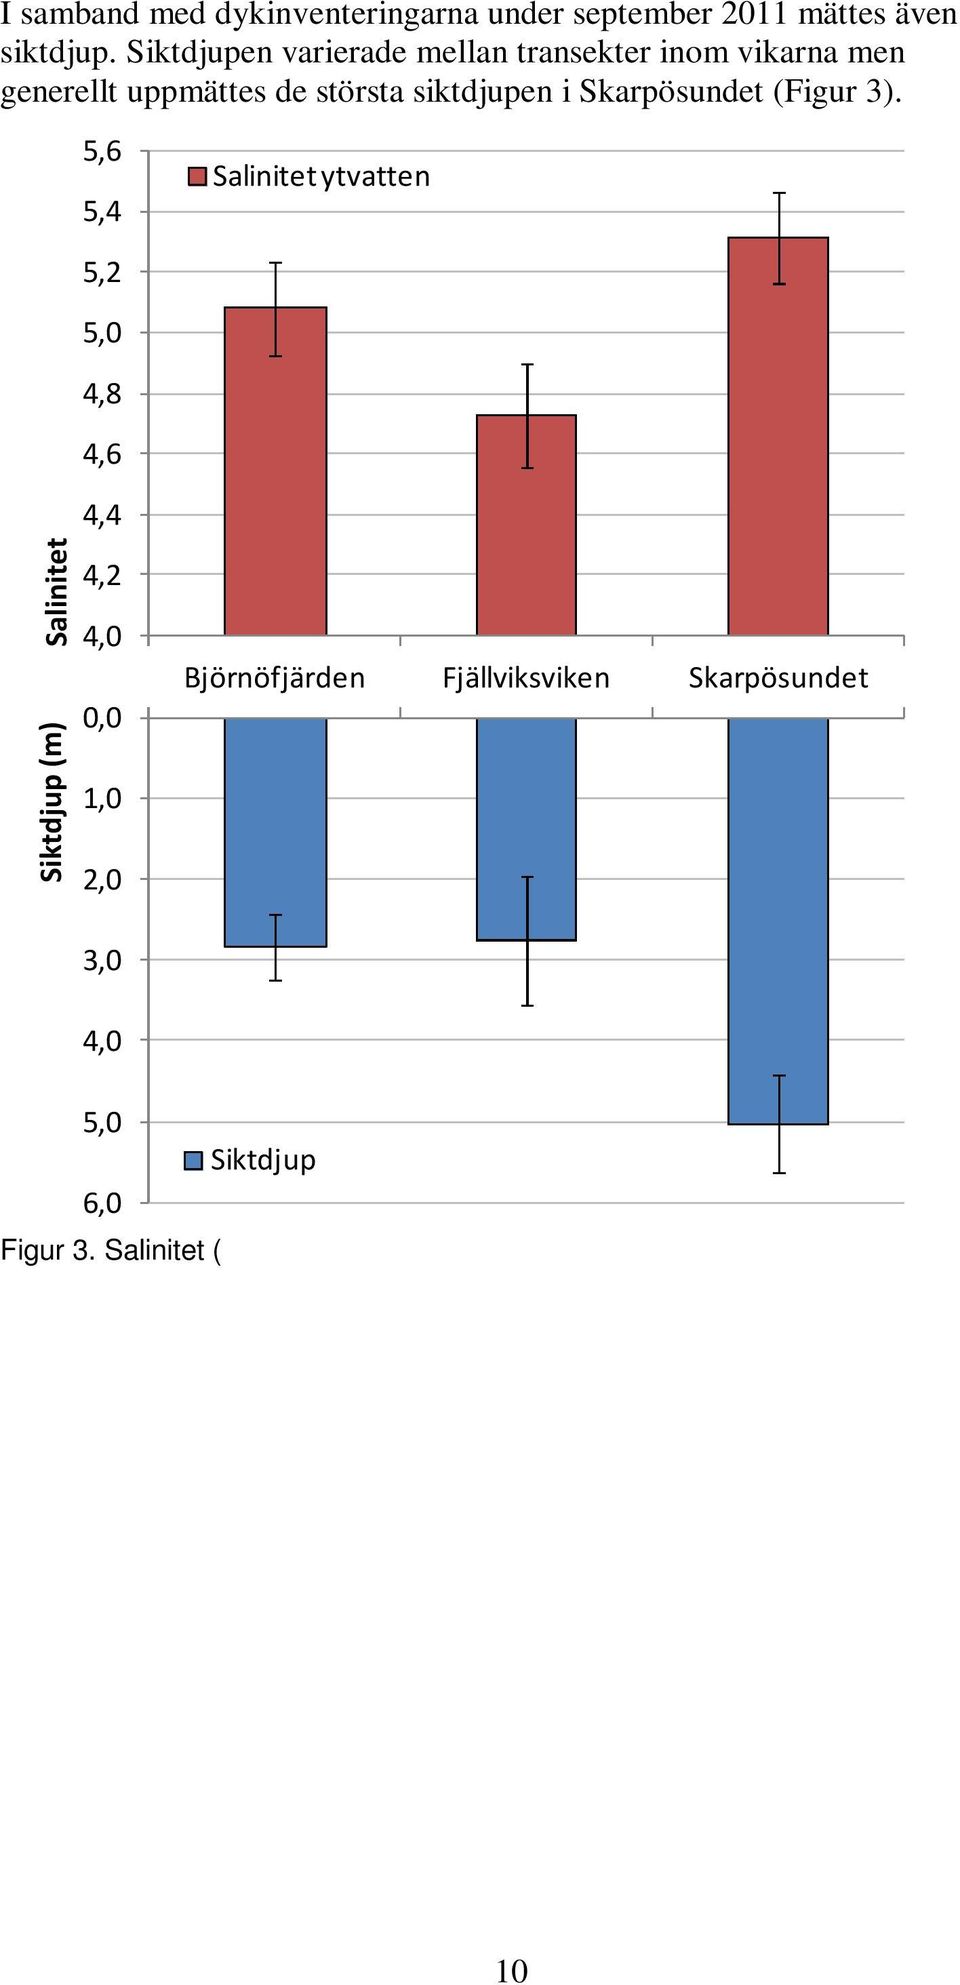 Salinitet ( ) och siktdjup (m) i de tre vikarna under september 2011. I figuren visas medelvärden och standardavvikelse.